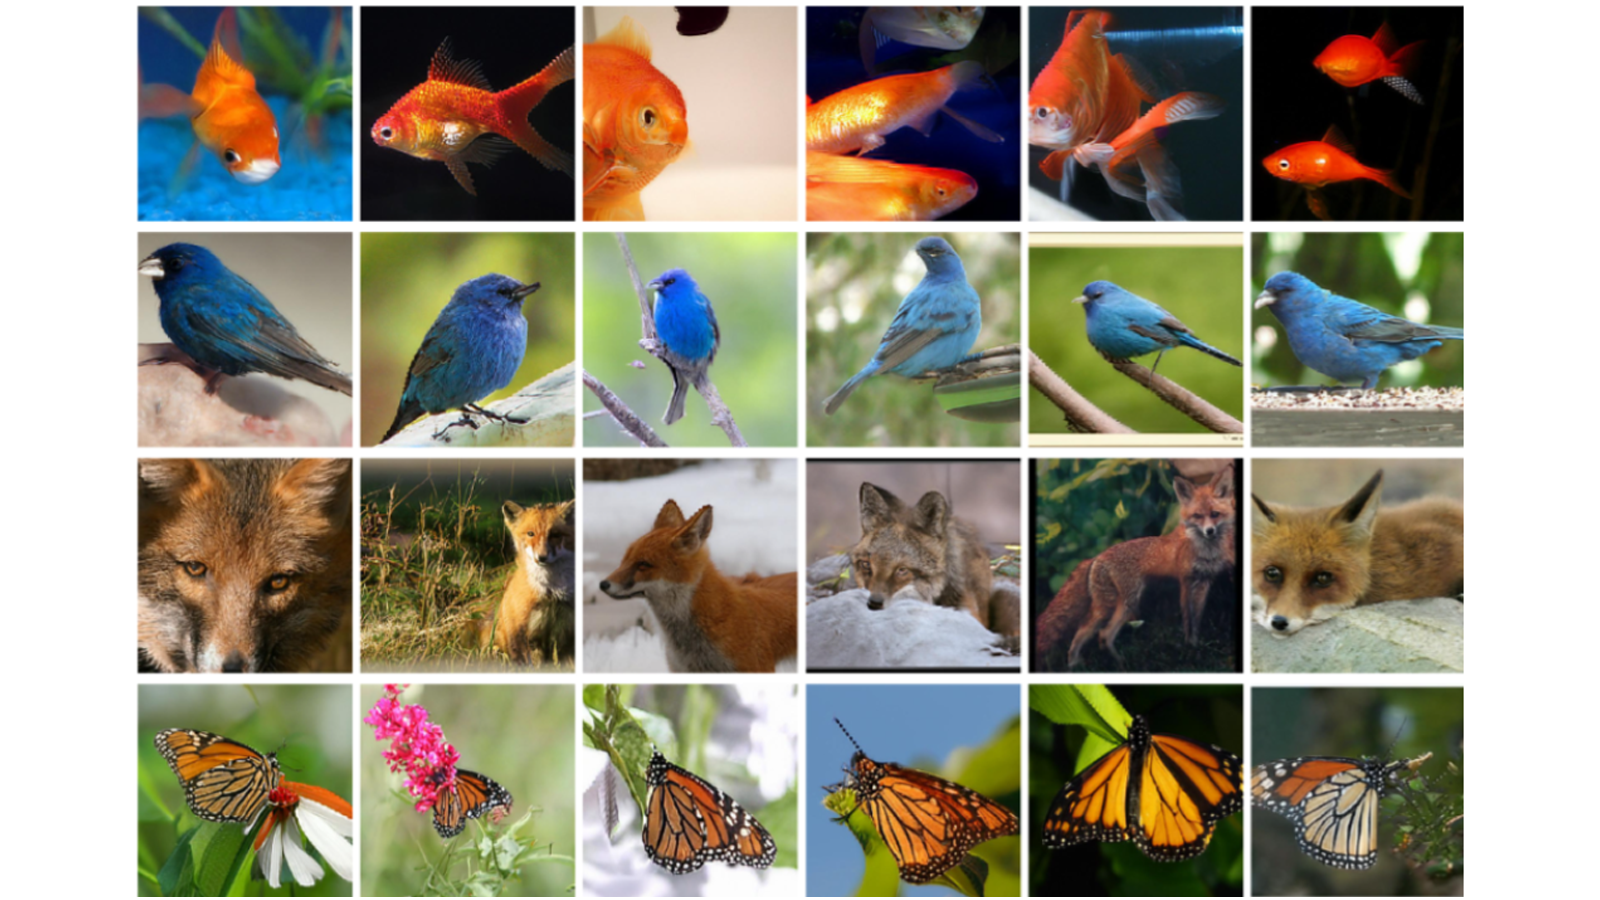 Exemples sélectionnés de générations d'images naturelles 256 × 256 conditionnelles de classe pour que le moteur d'IA puisse apprendre.  Chaque ligne contient des exemples d'une classe particulière.